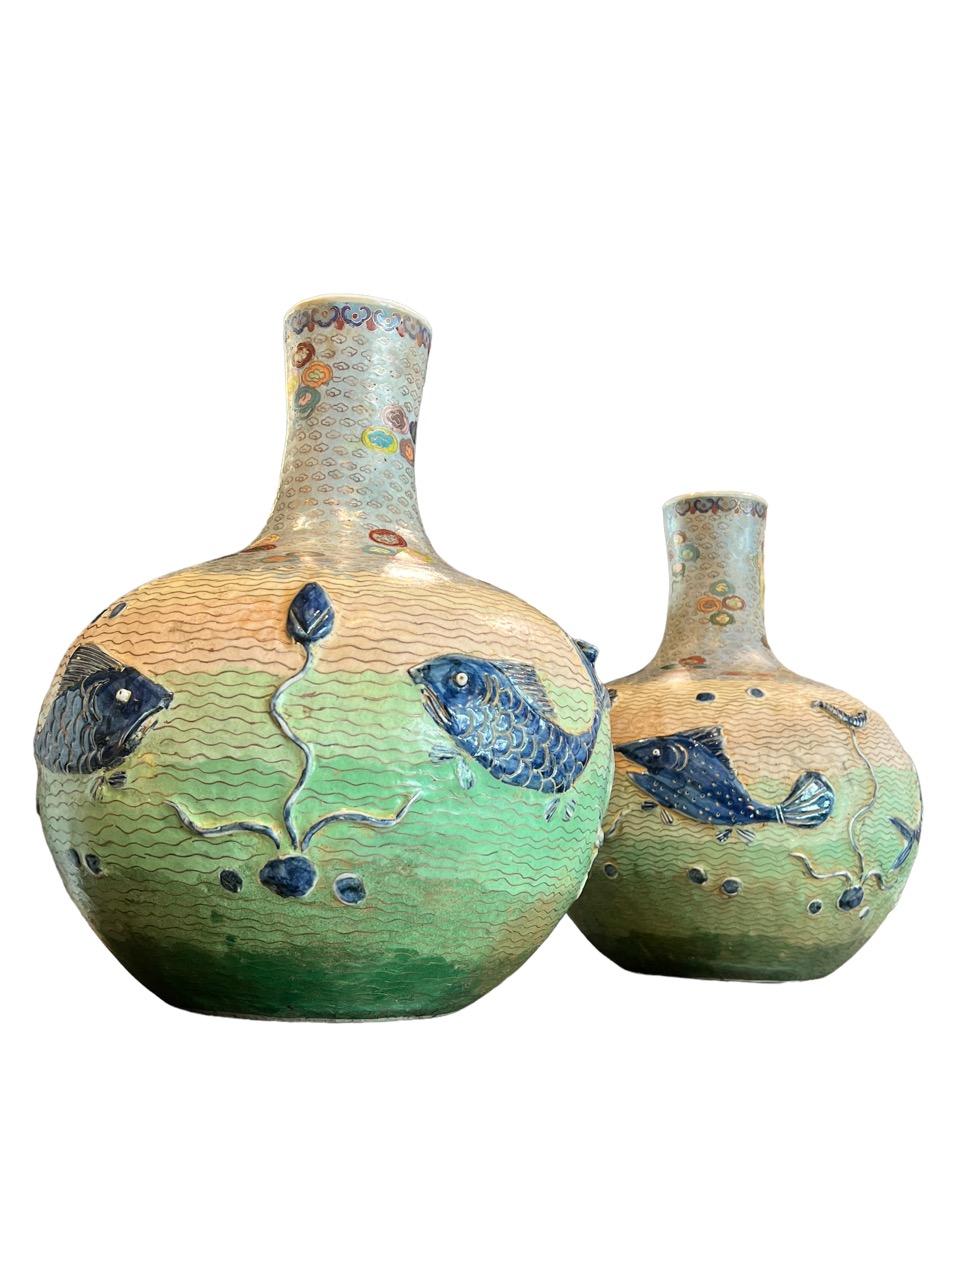 Peint à la main Paire de vases en porcelaine émaillée cloisonnée datant du début du 20e siècle (années 1900).